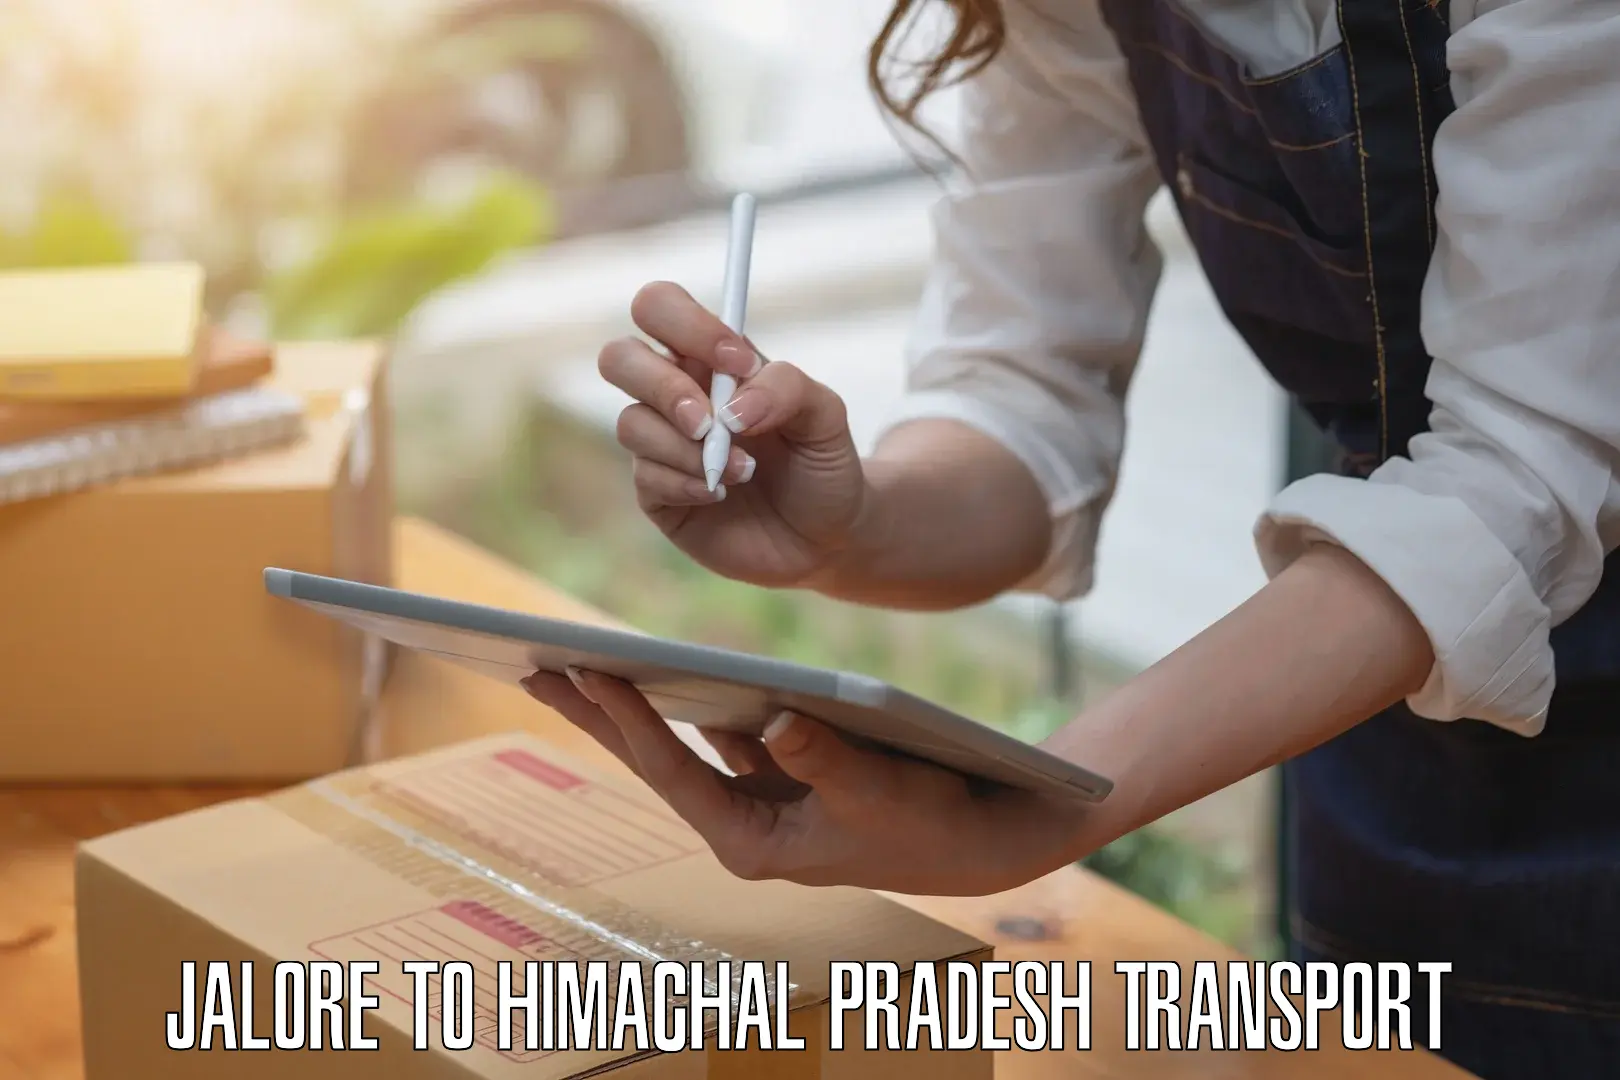 Logistics transportation services Jalore to Hamirpur Himachal